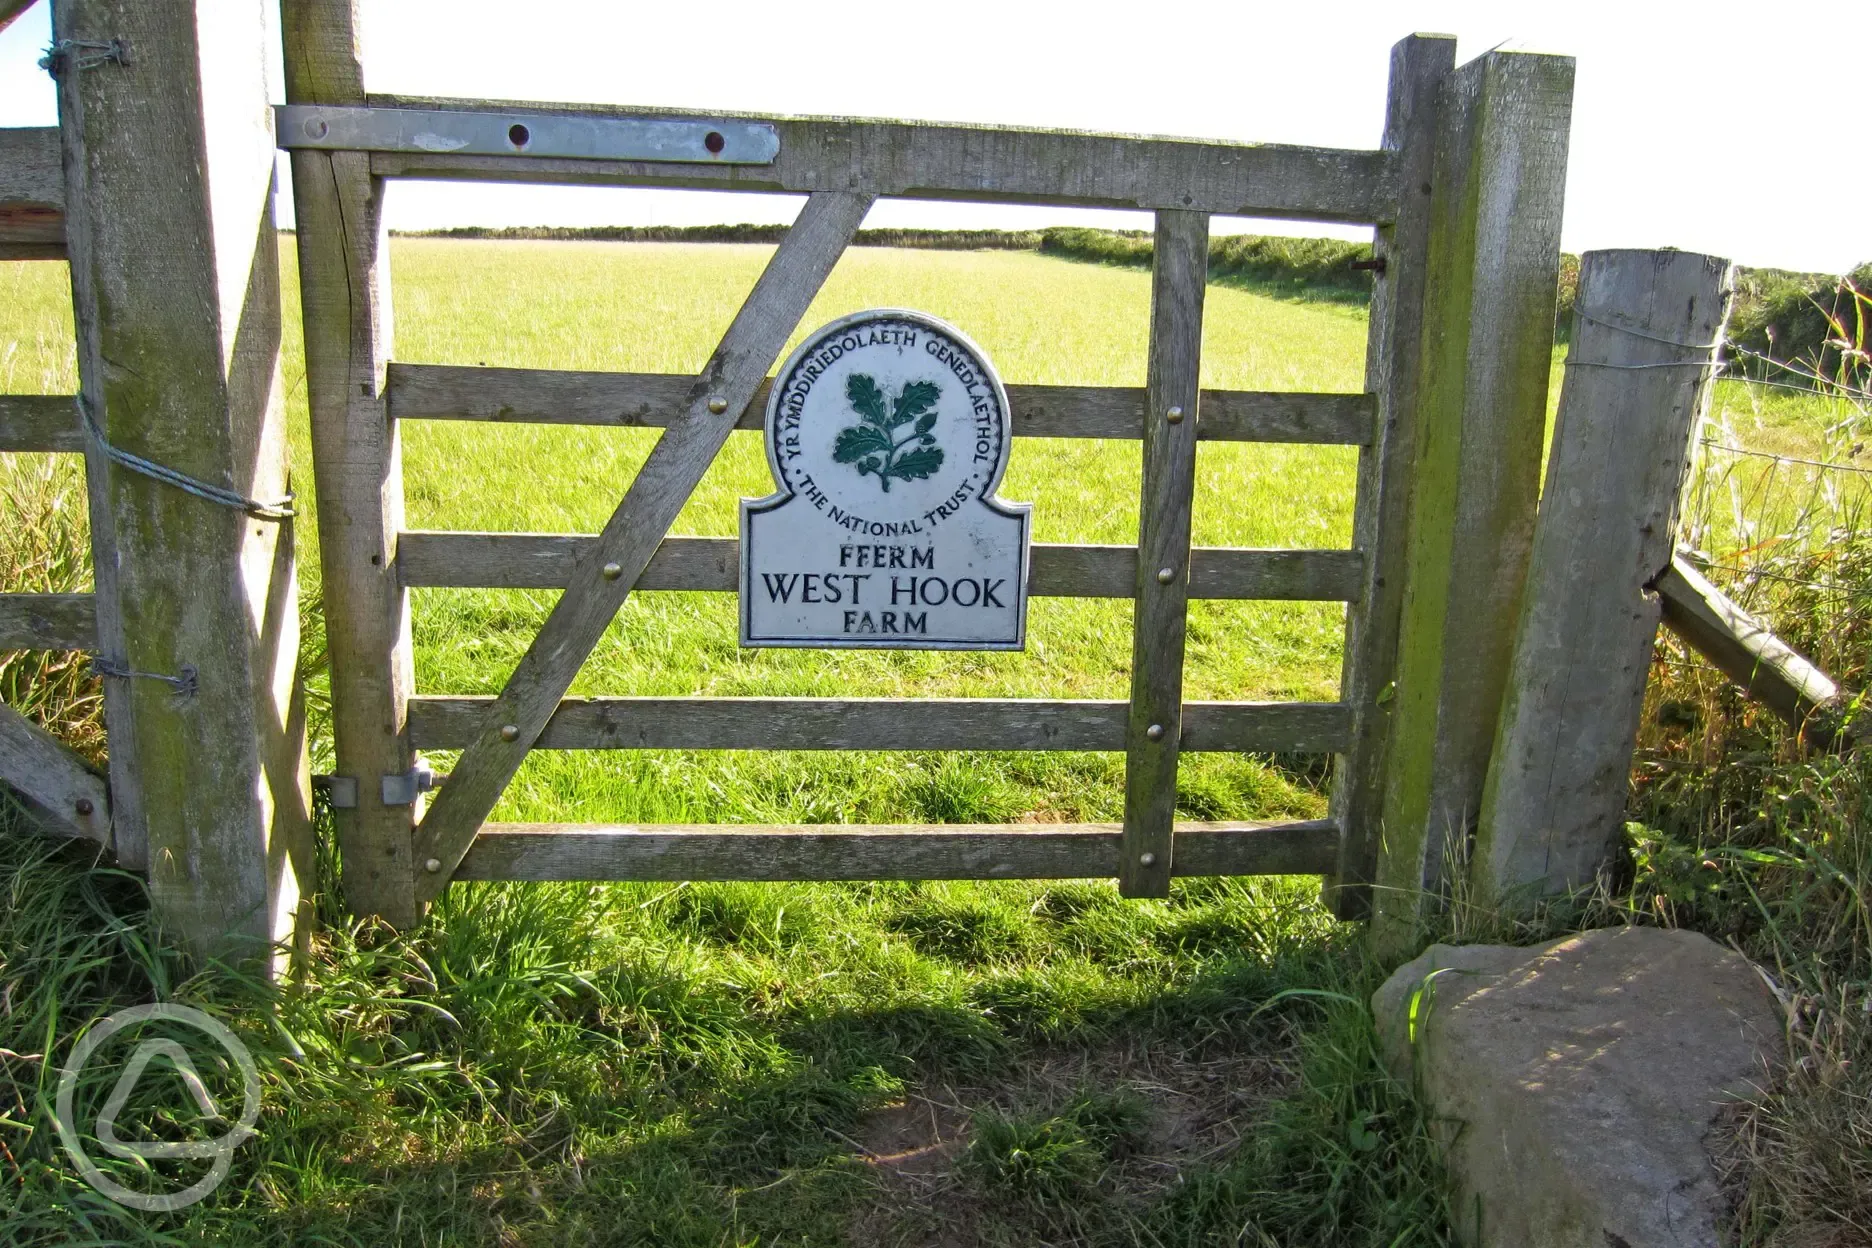 West Hook Farm - part of Pembrokeshire Coast National Park